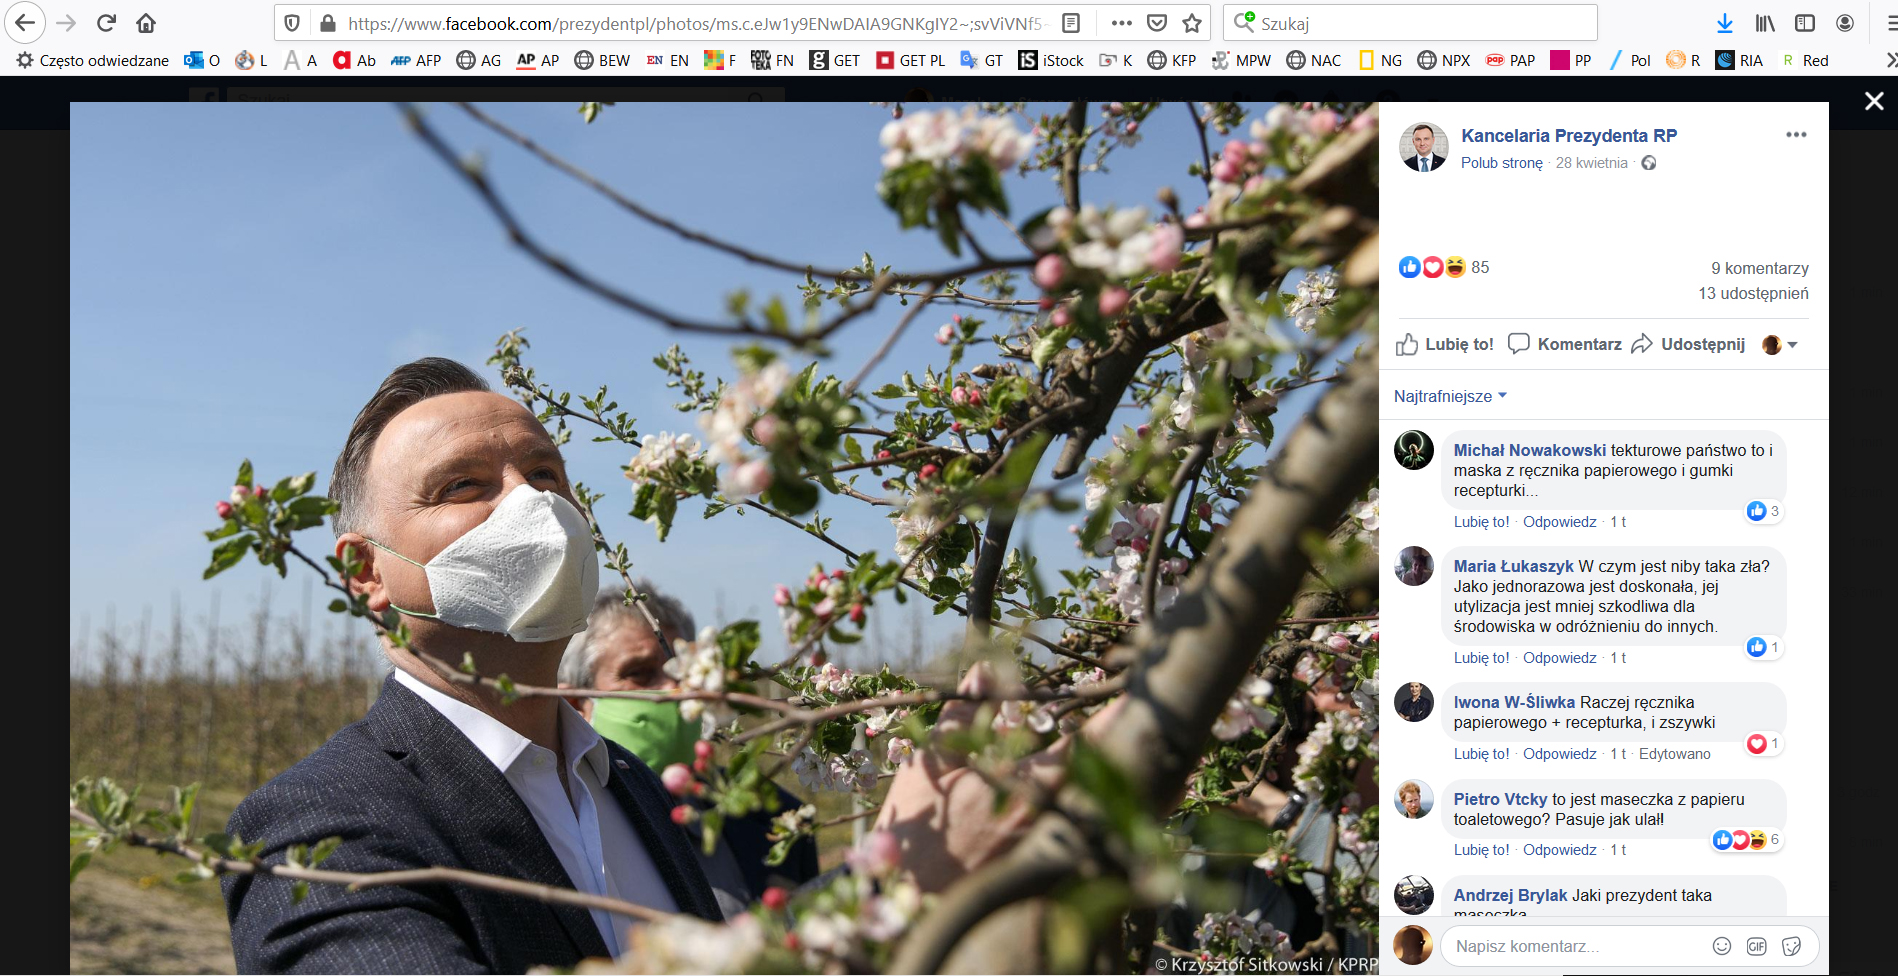 Andrzej Duda na spotkaniu z sadownikami w Dylewie koło Grójca. Uwagę internautów przykuł widok maseczki prezydenta, która została zrobiona z ręcznika papierowego i gumek recepturek, 28 kwietnia 2020 r.